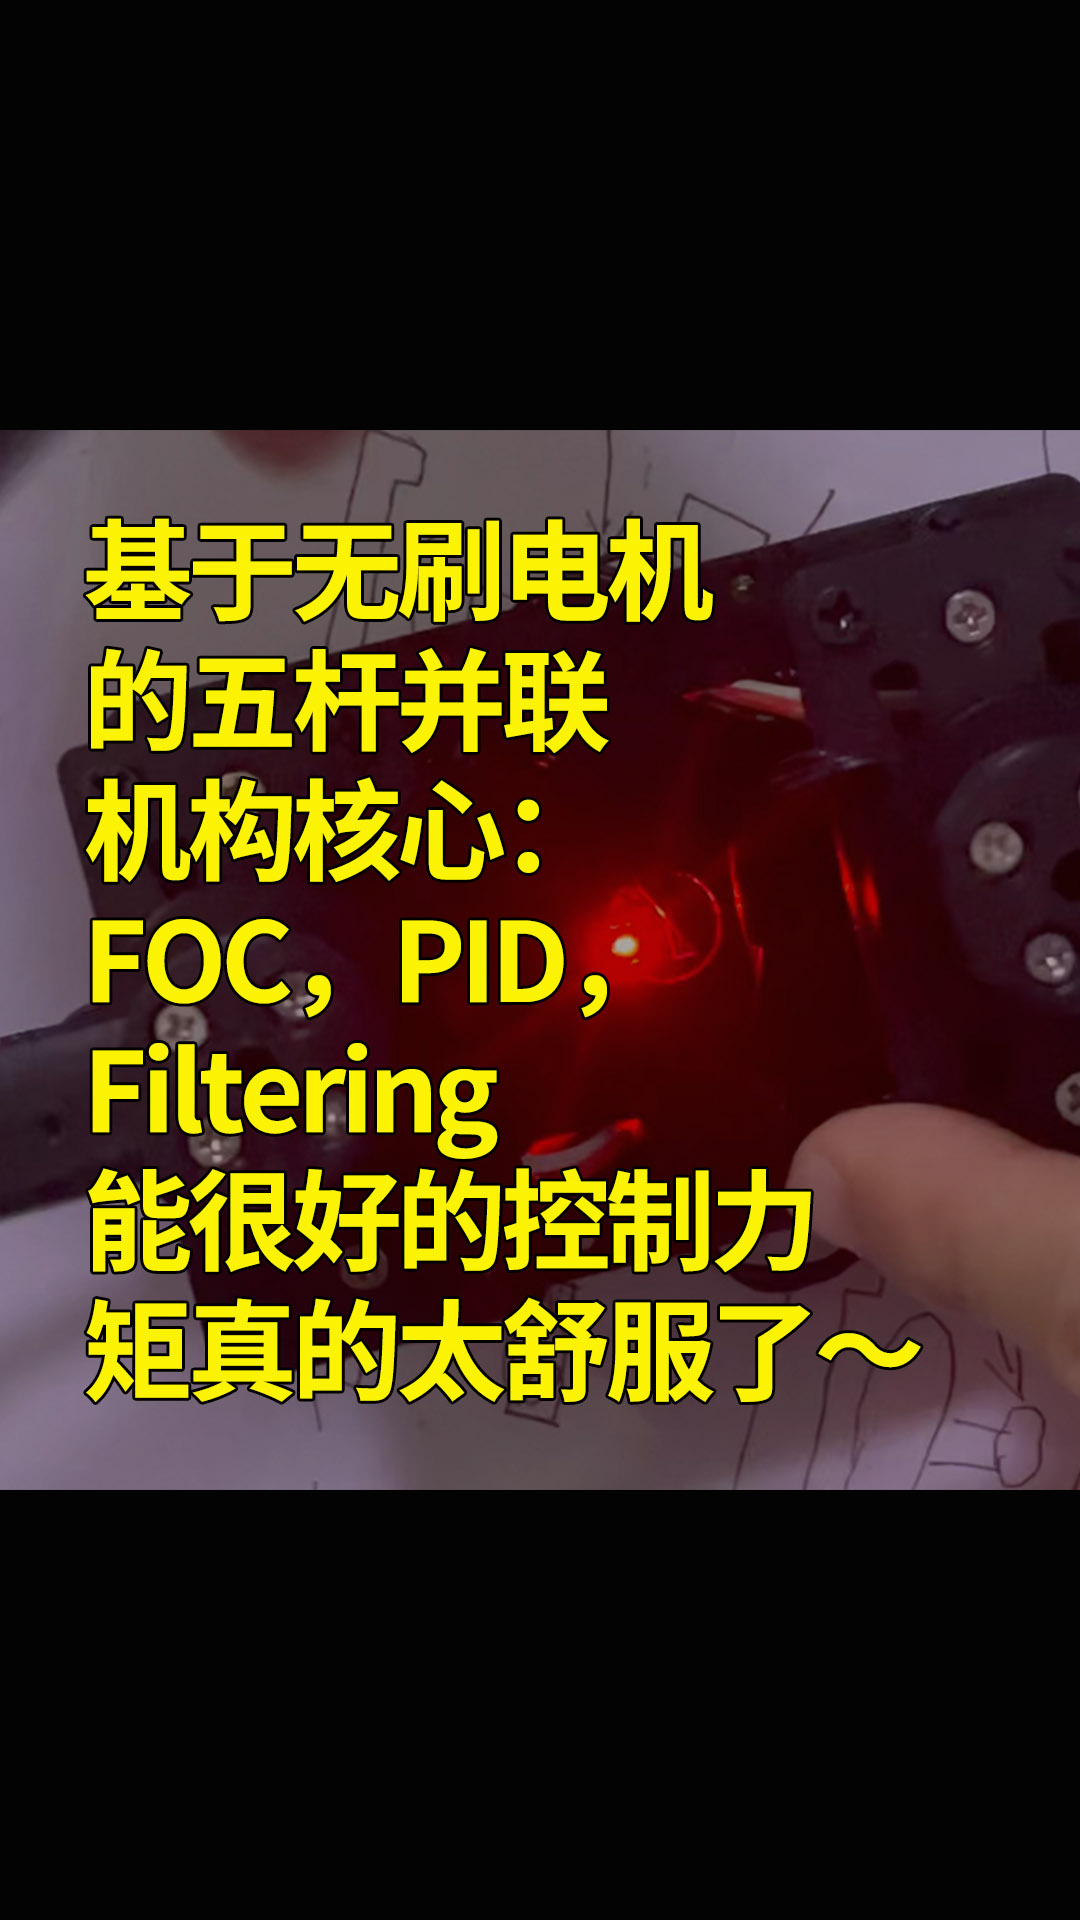 基于無(wú)刷電機的五桿并聯(lián)機構核心：FOC，PID，Filtering能很好的控制力矩真的太舒服了～